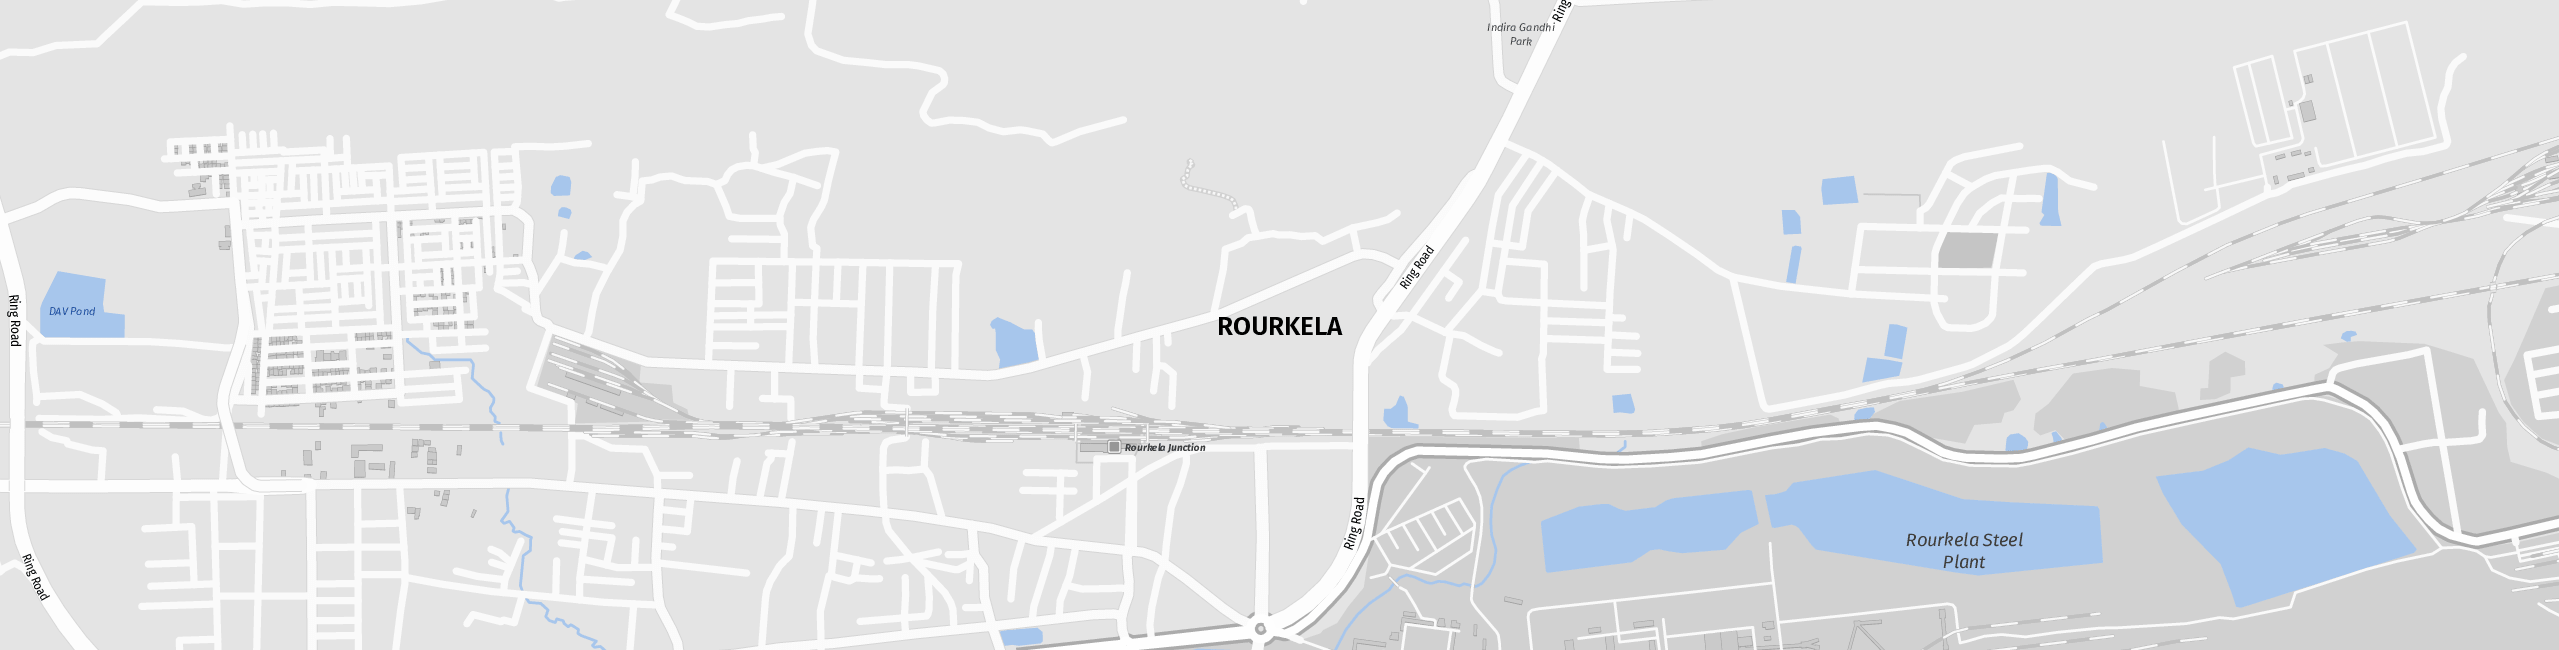 Stadtplan Rourkela zum Downloaden.